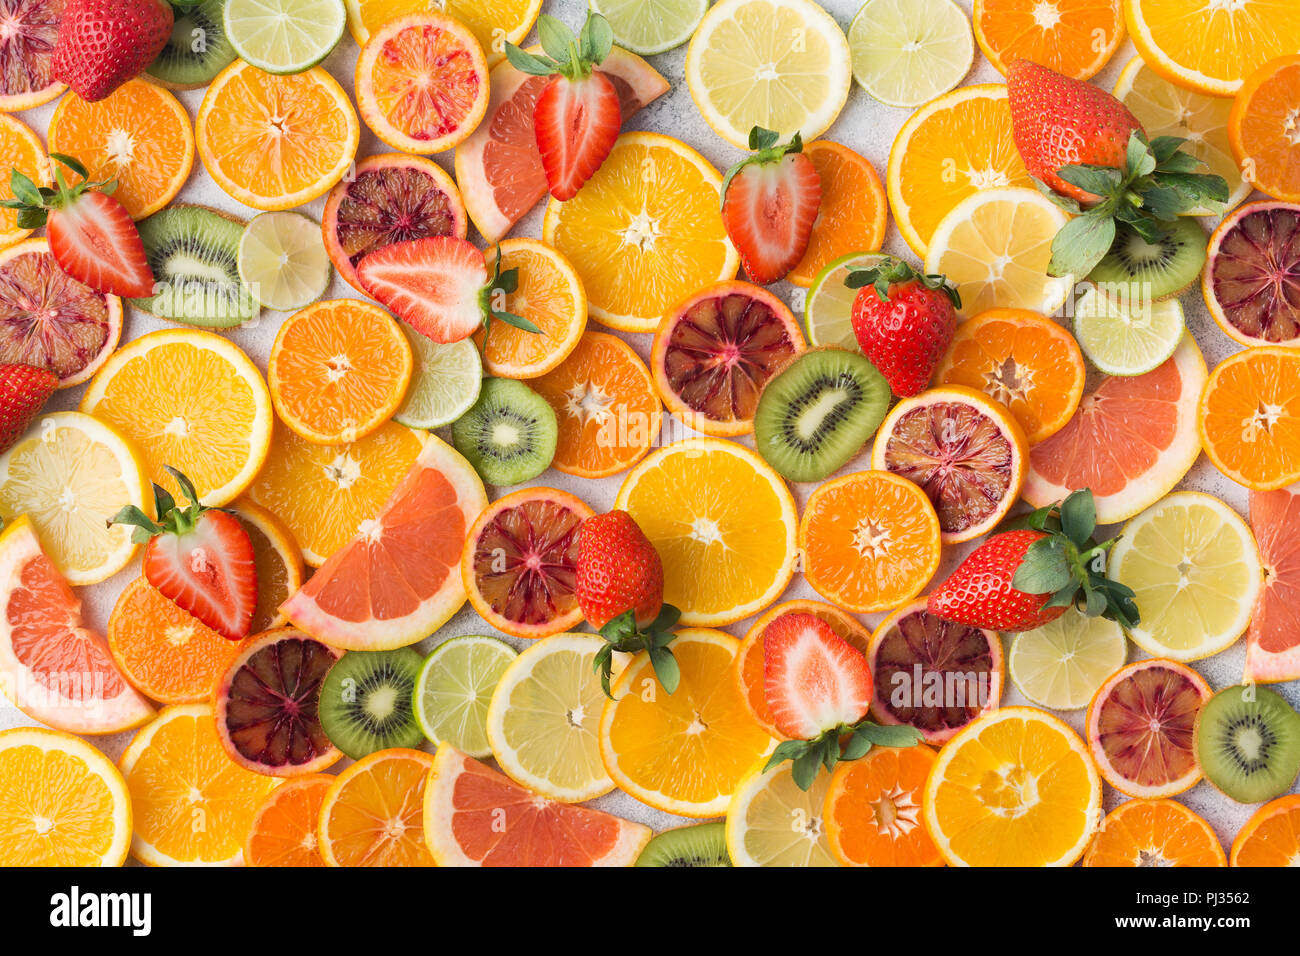 Frutta colorata pattern, arance, clementine e arance pigmentate, kiwi, fragole e pompelmi bianco su sfondo tabella, vista dall'alto, il fuoco selettivo Foto Stock